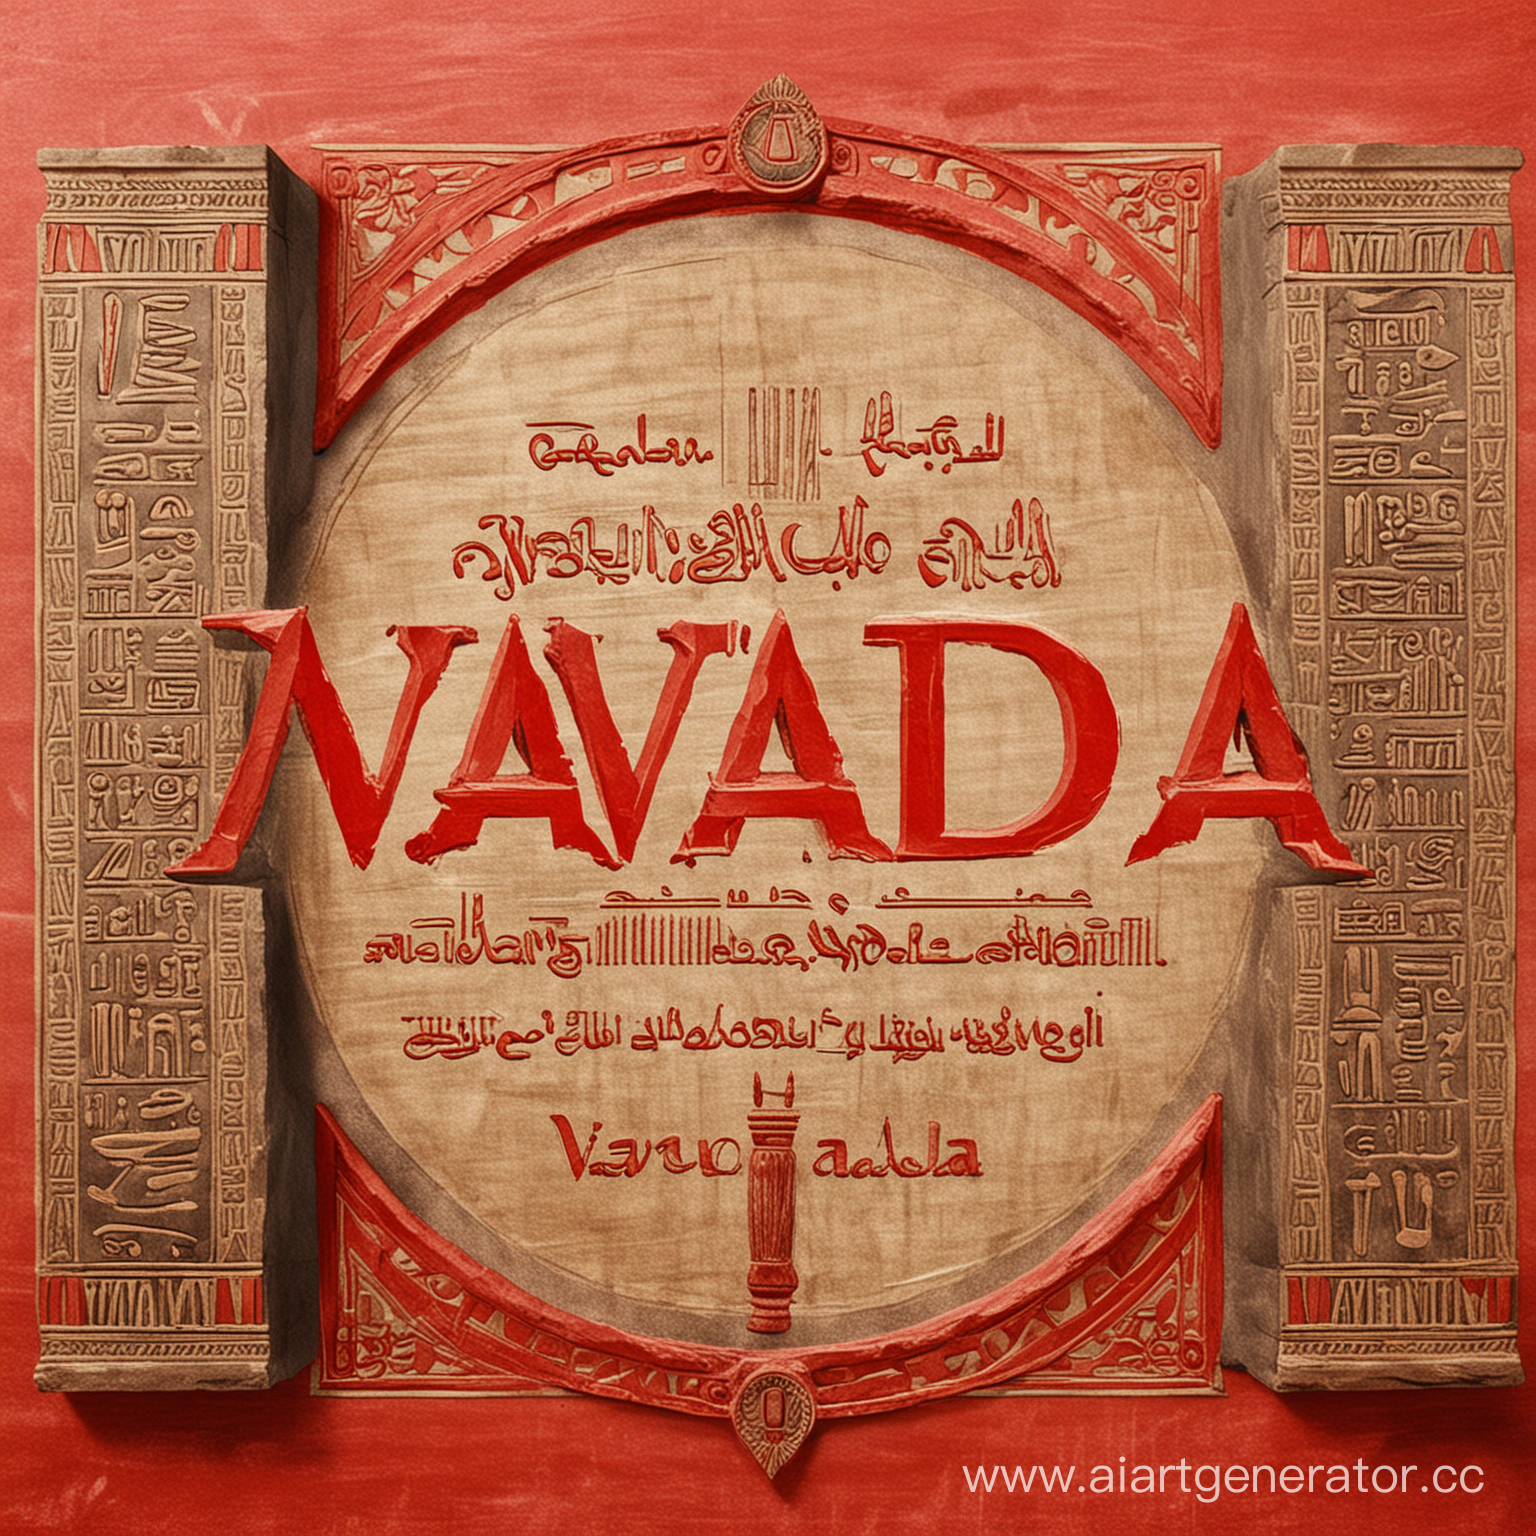 сделай картинку с надписью VAVADA на фоне египетского стиля , выдели слово VAVADA красным цветом , что бы слово VAVADA было понятно написано 